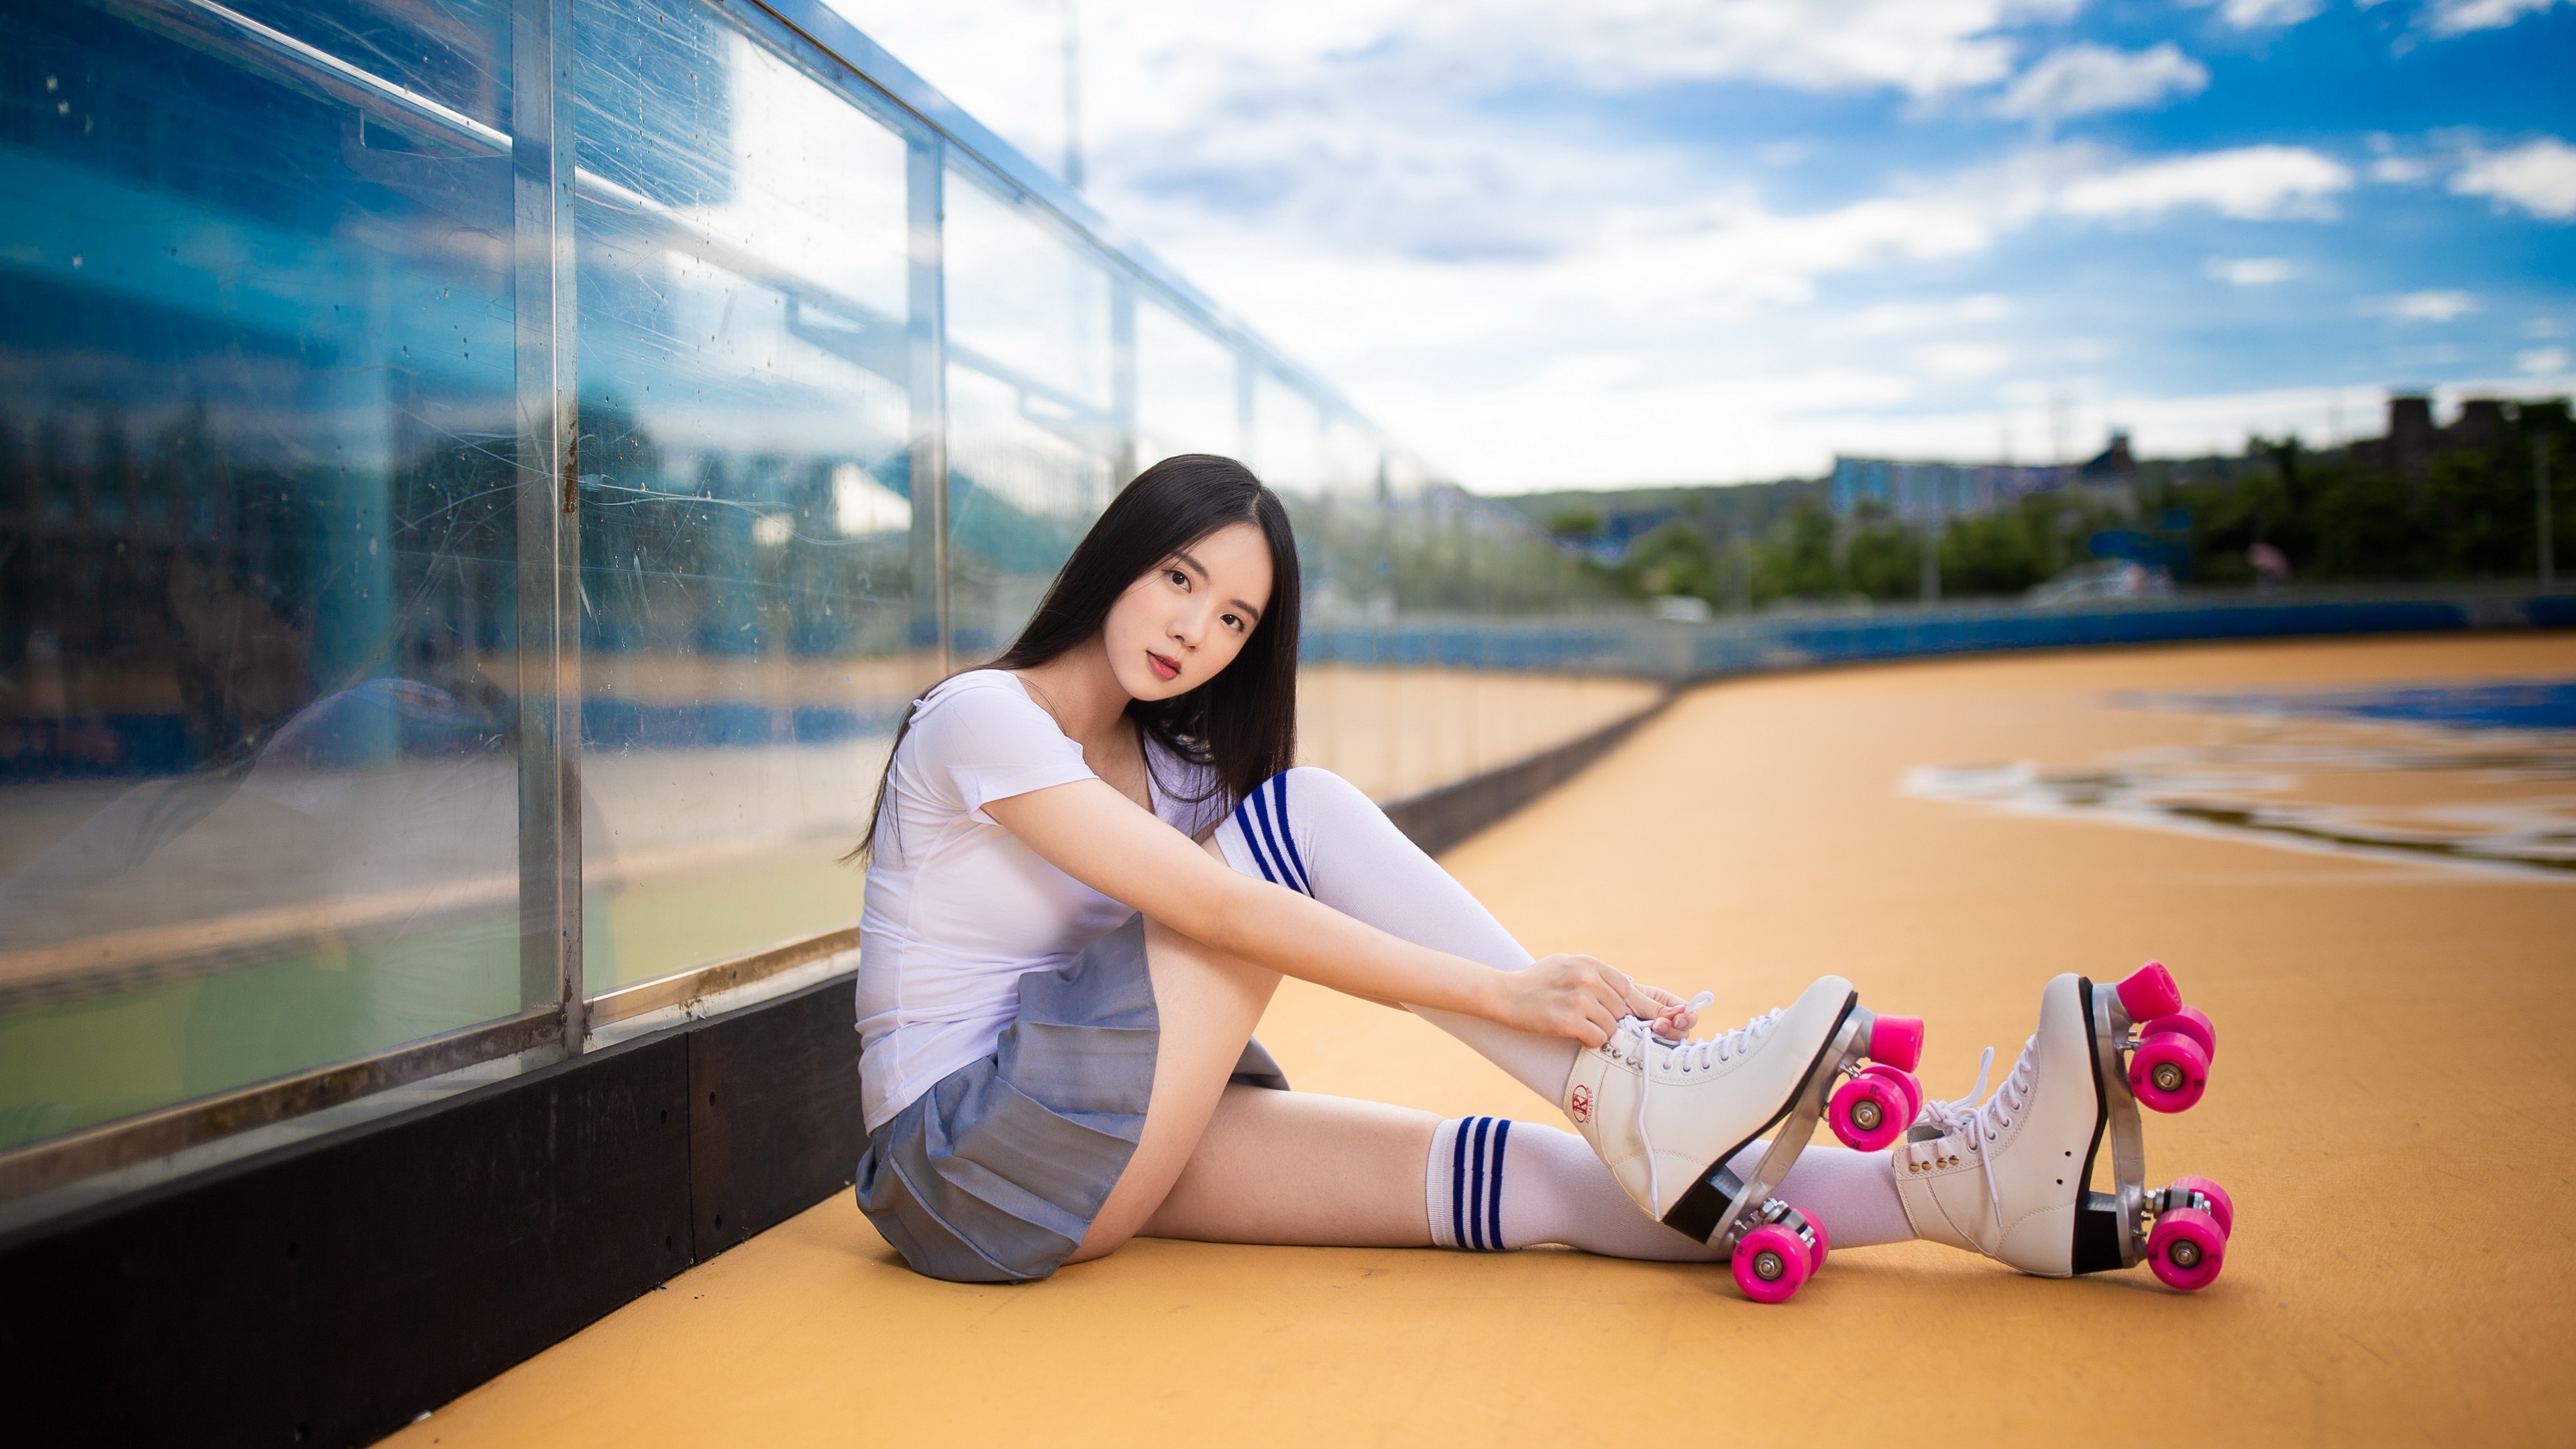 Rollerskating: Skater girl, Roller rink, Speed skating, Freestyle roller dancing. 3840x2160 4K Background.